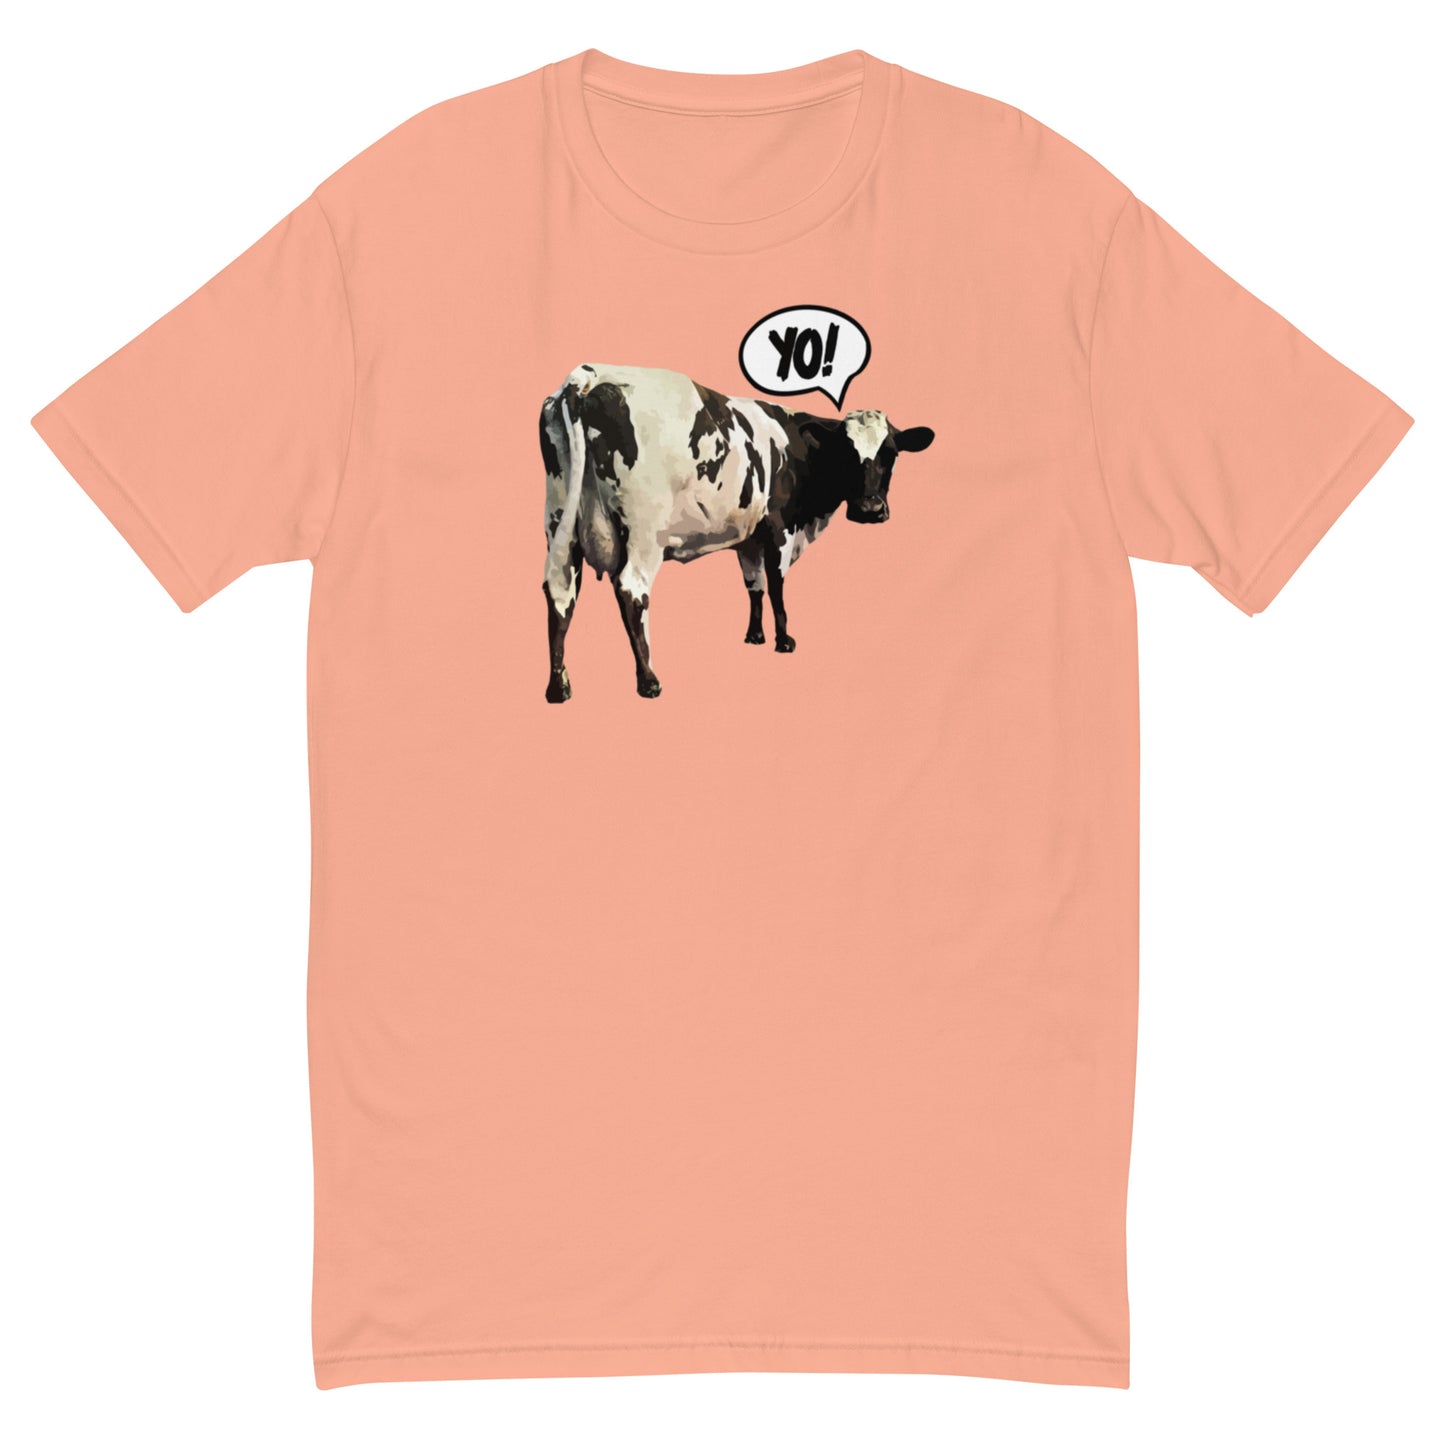 "Yo!" Cow Short Sleeve T-shirt